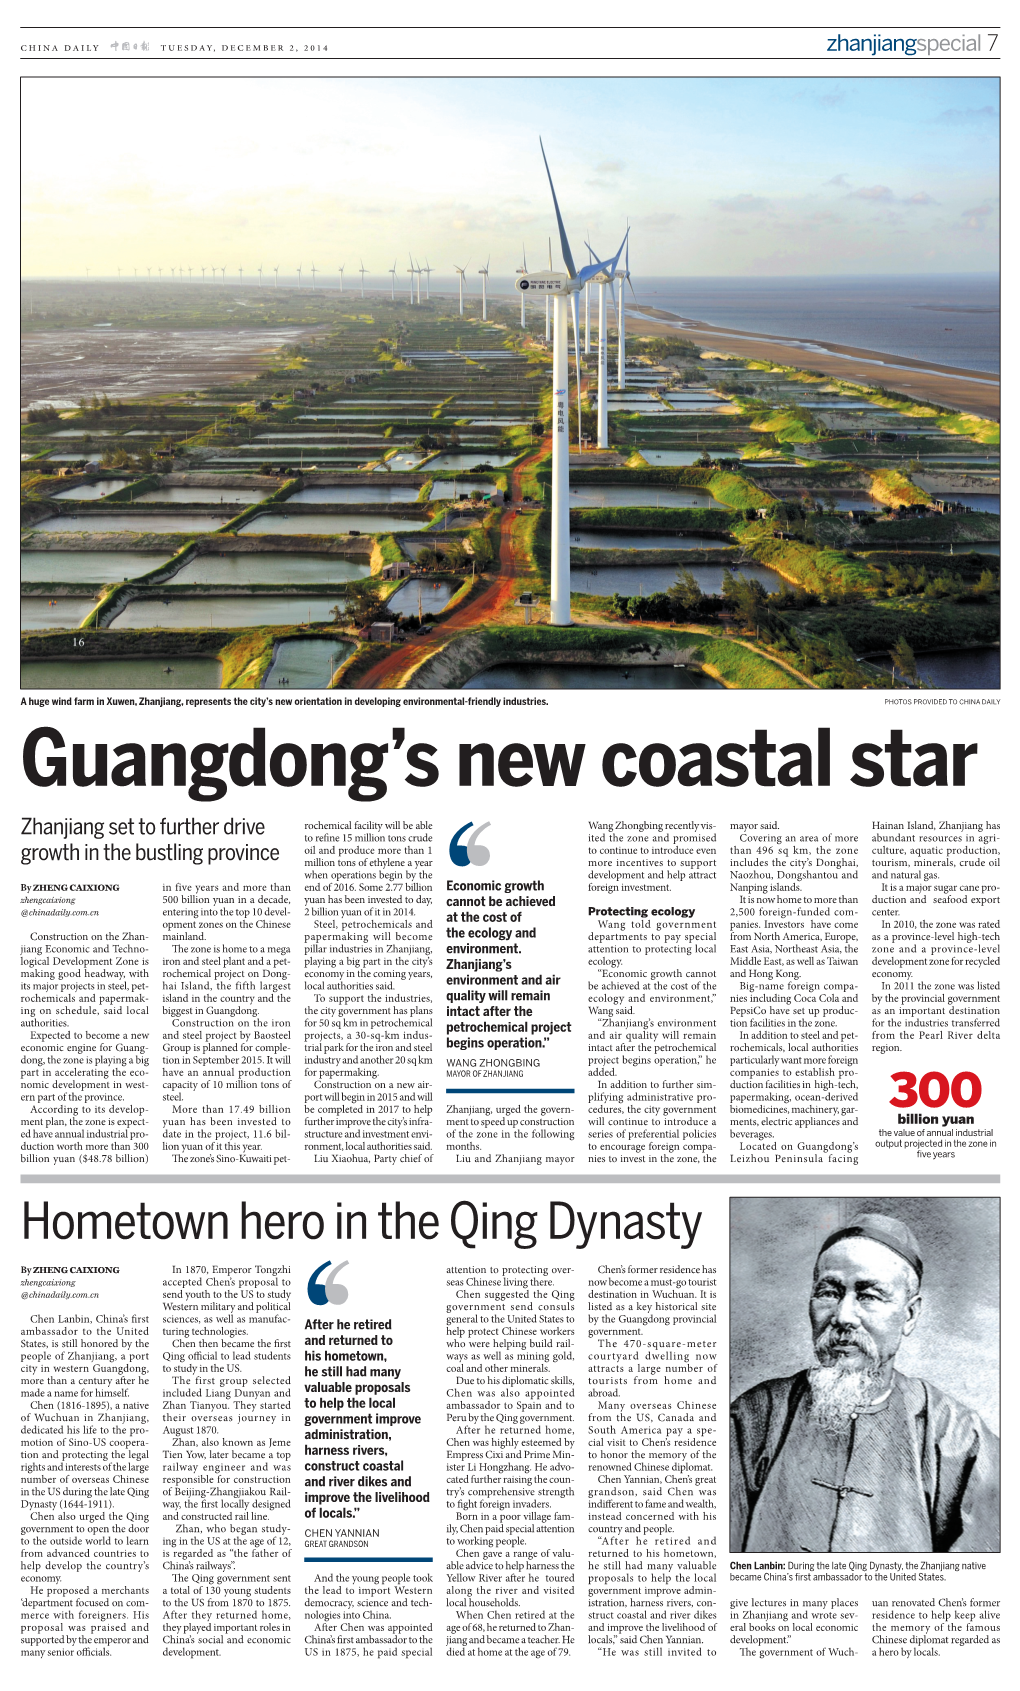 Guangdong's New Coastal Star